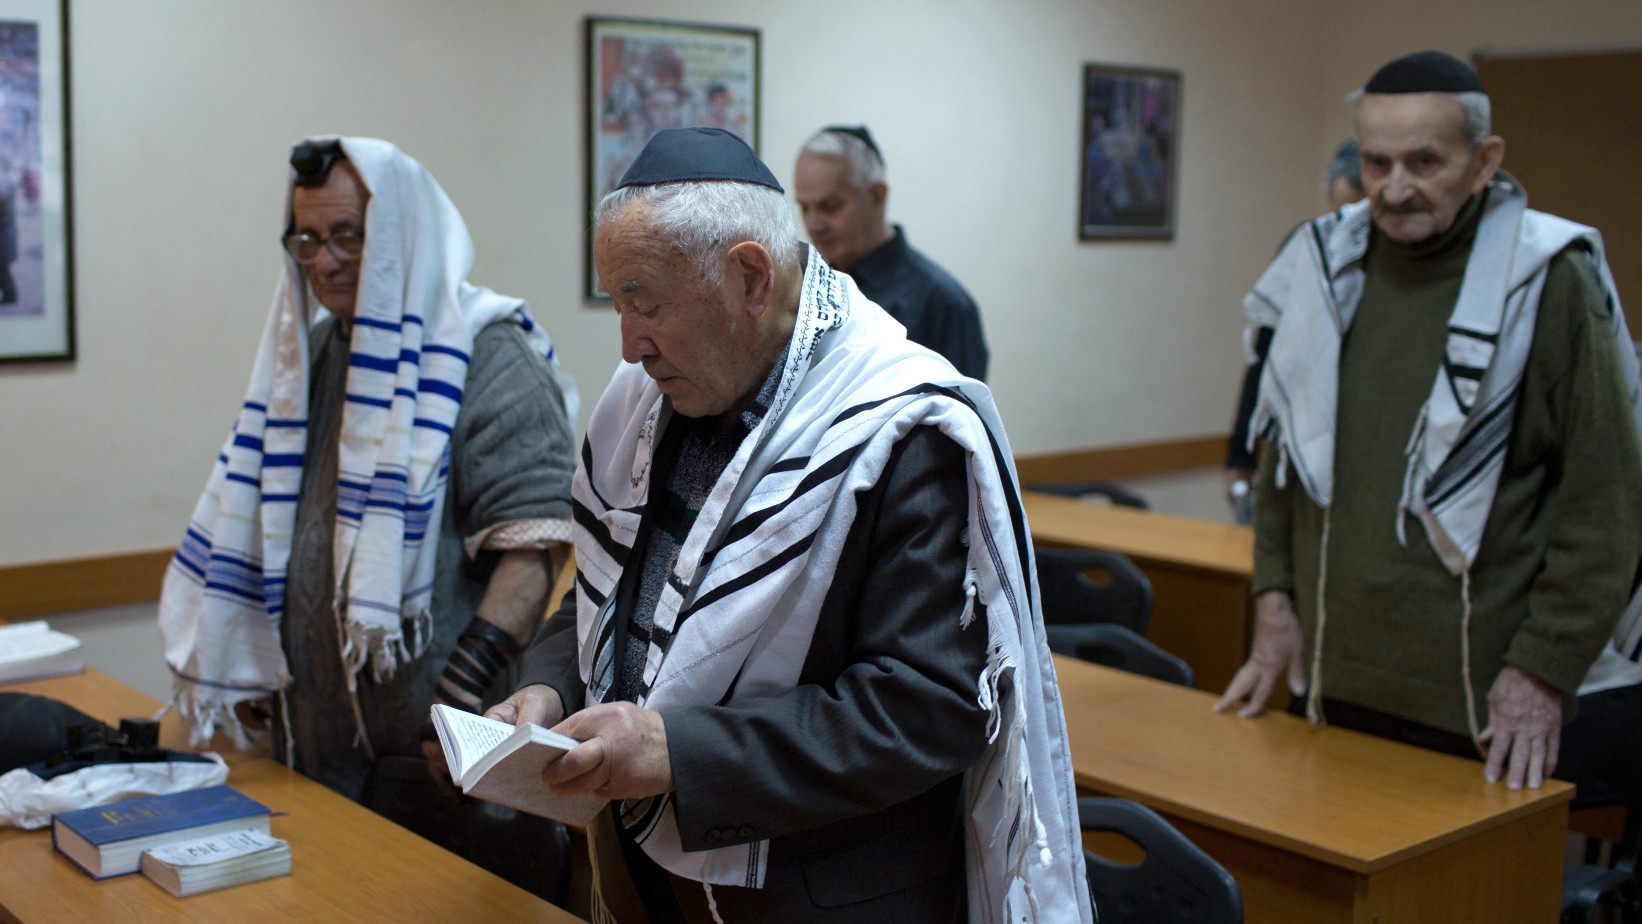 Des membres de la communauté juive ukrainienne prient dans l’unique synagogue de Donetsk, le 14 novembre 2014 (AFP)